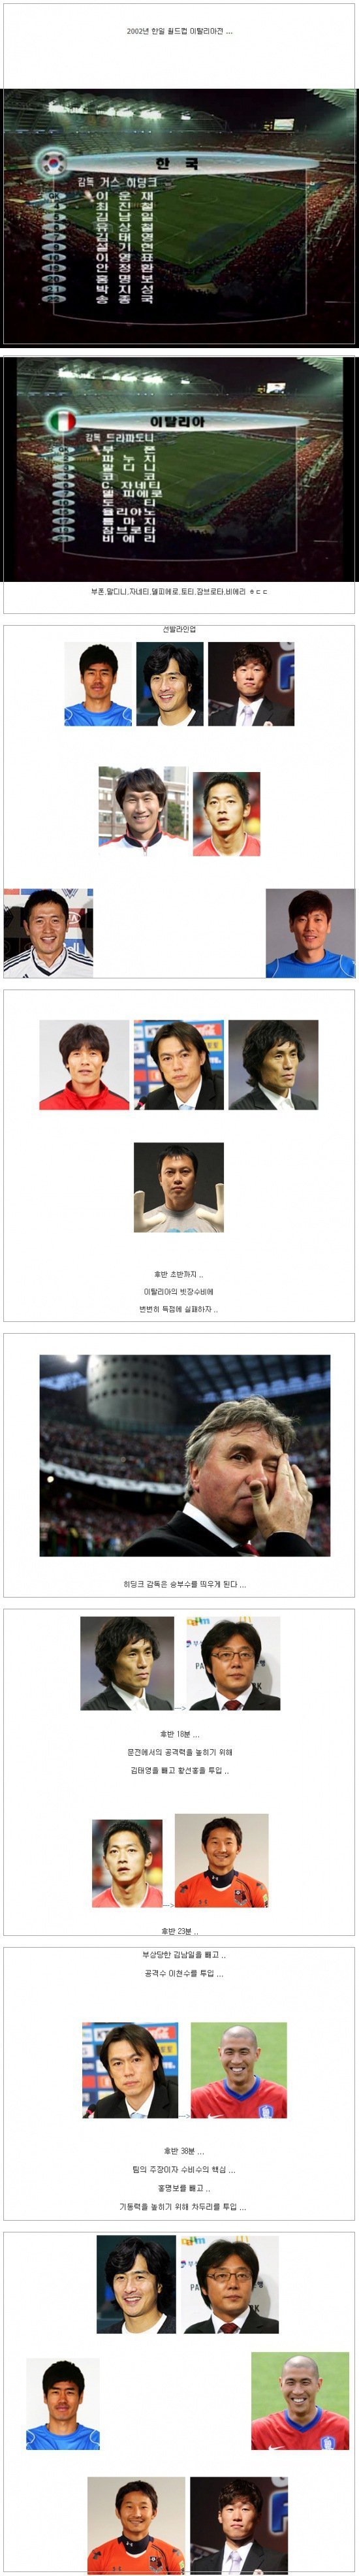 ●韓国サッカー史上最高の賭博